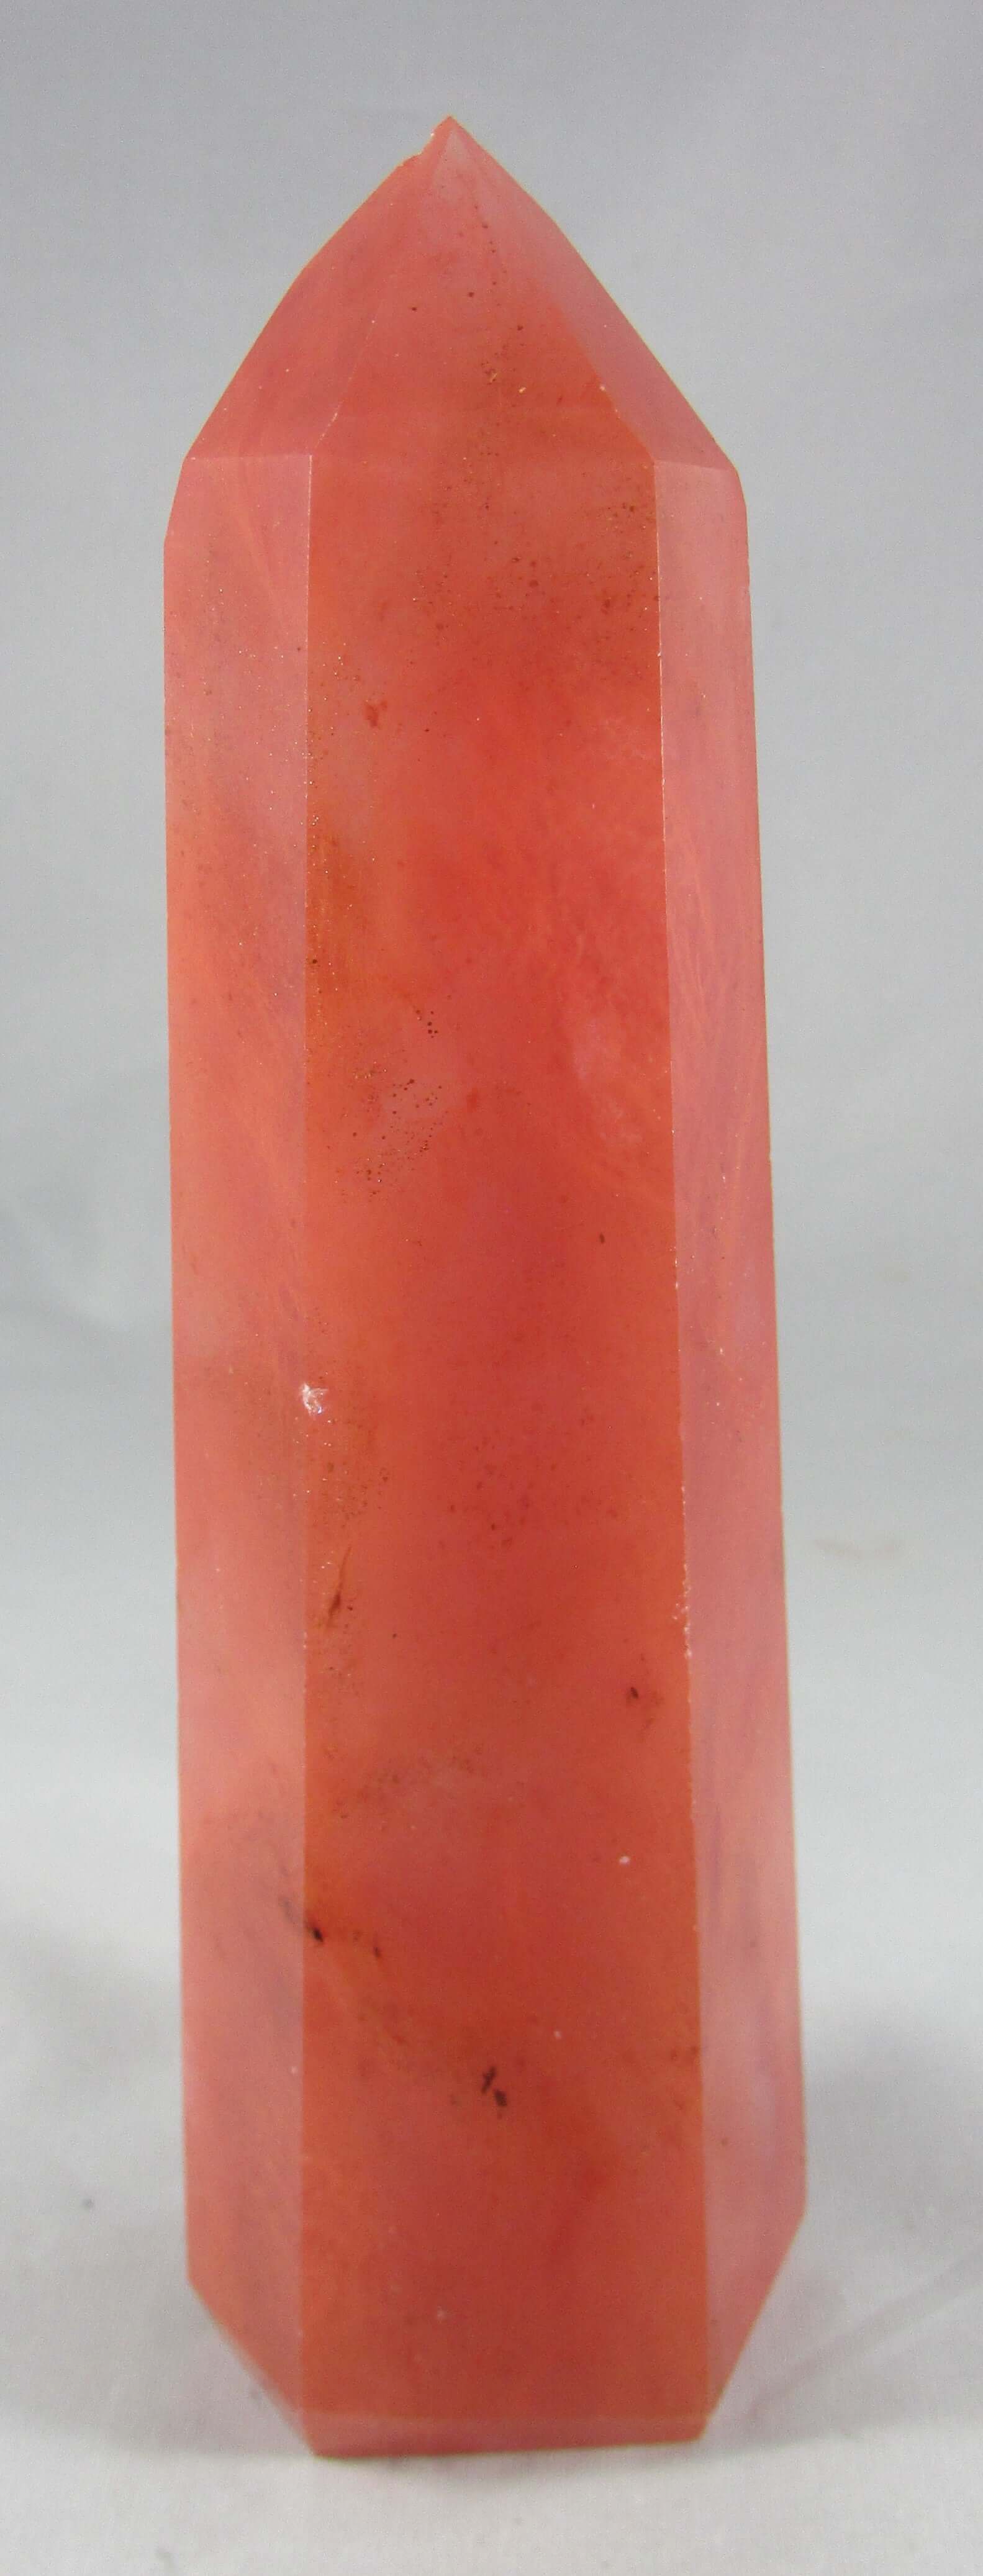 red obisidan polished crystal obelisk, natural crystals